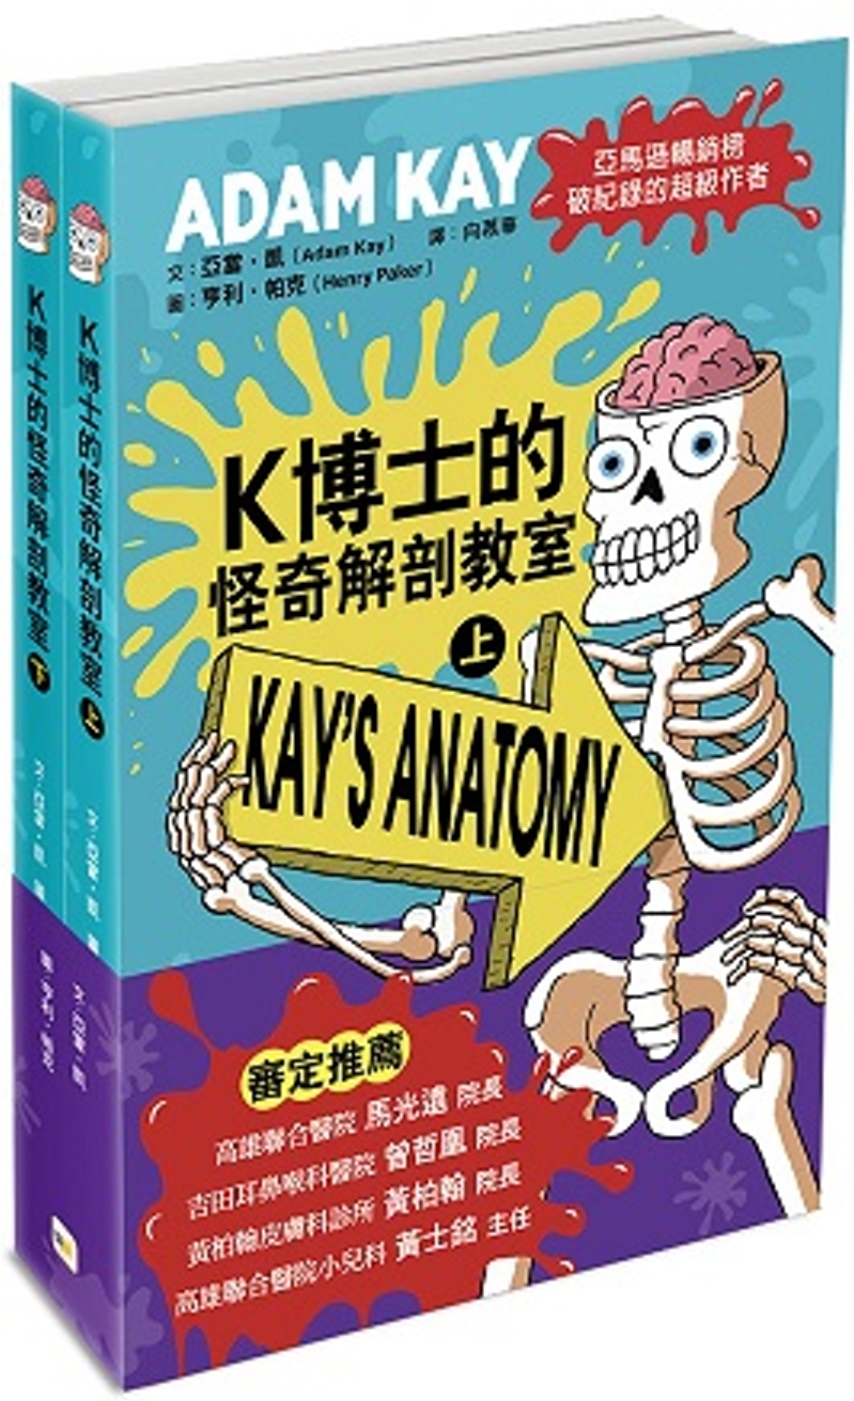 K博士的怪奇解剖教室 (上)、(下) (兩冊不分售)（中高年...